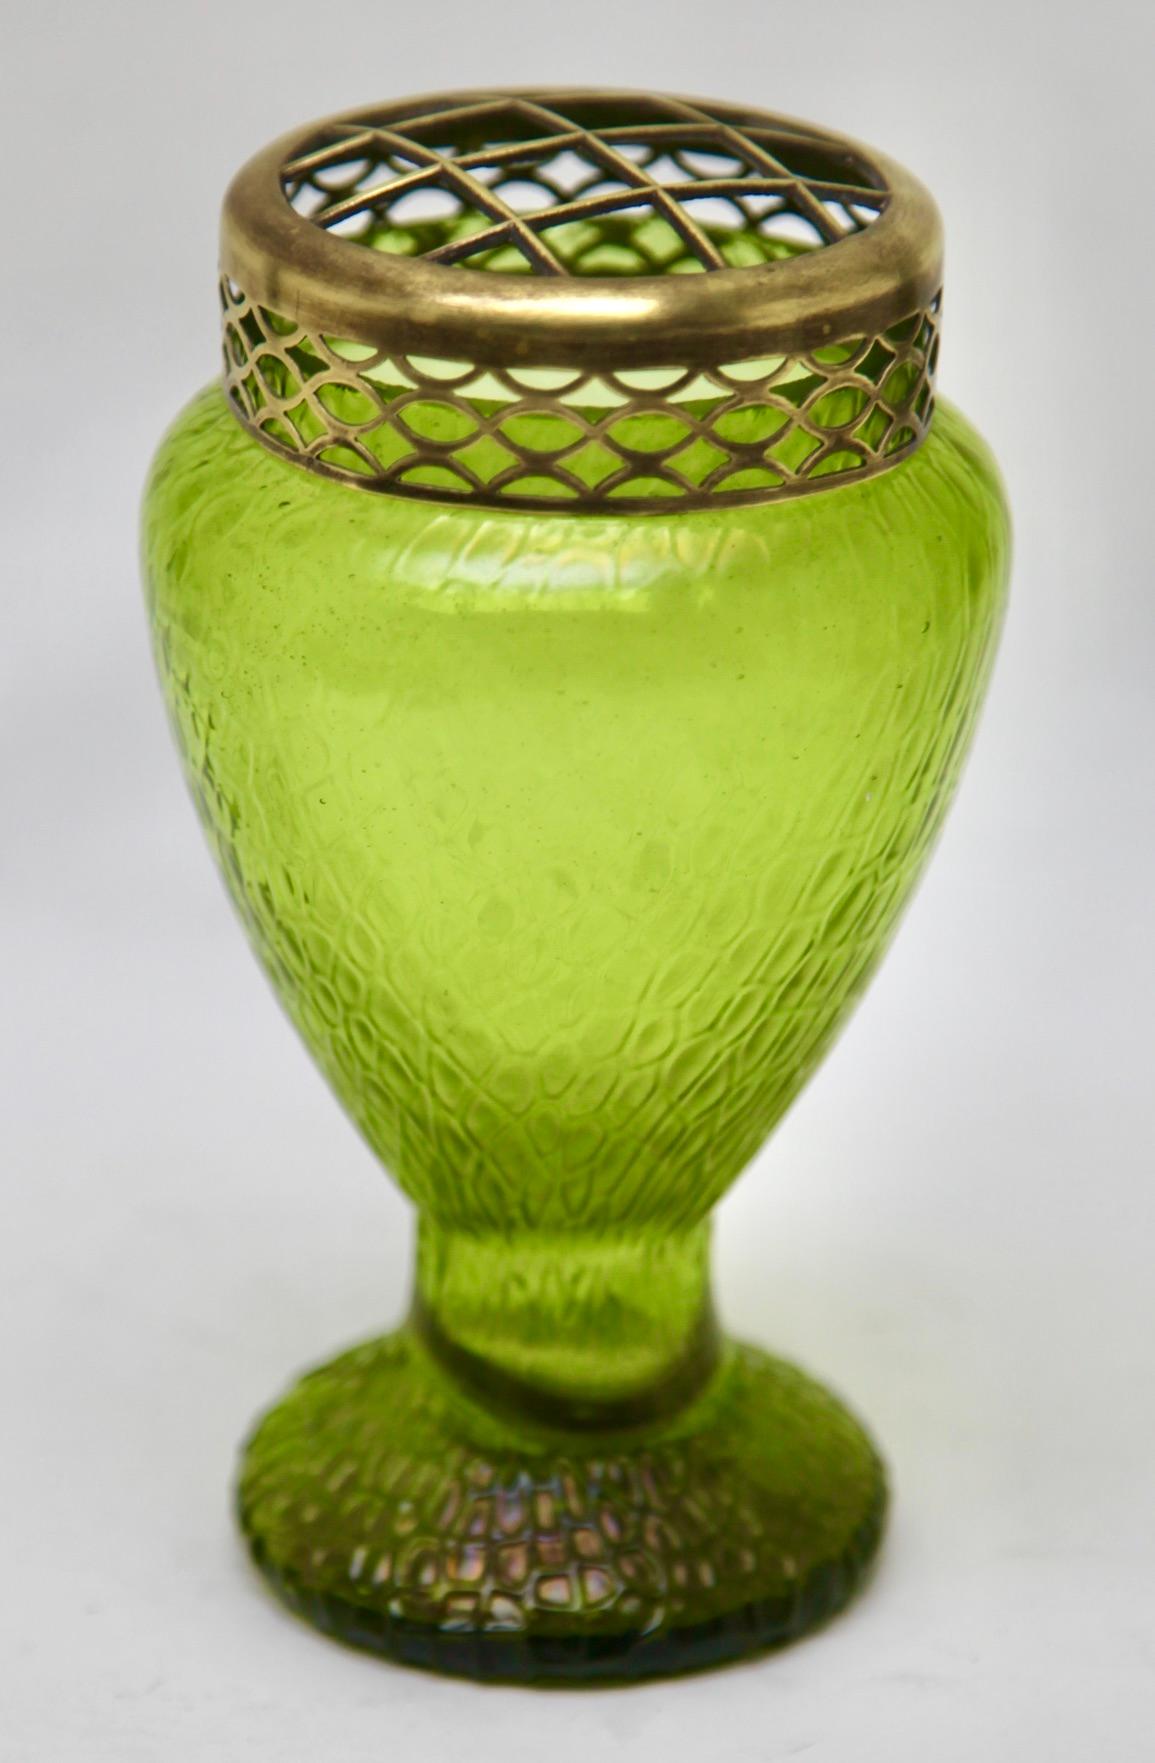 Grüne schillernde Jugendstil-Vase aus irisierendem Glas Pique Fleurs' von Loetz' mit Grille

Subtile, mundgeblasene Glasvase im Stil des Art déco. Diese Vasenform wird oft als 